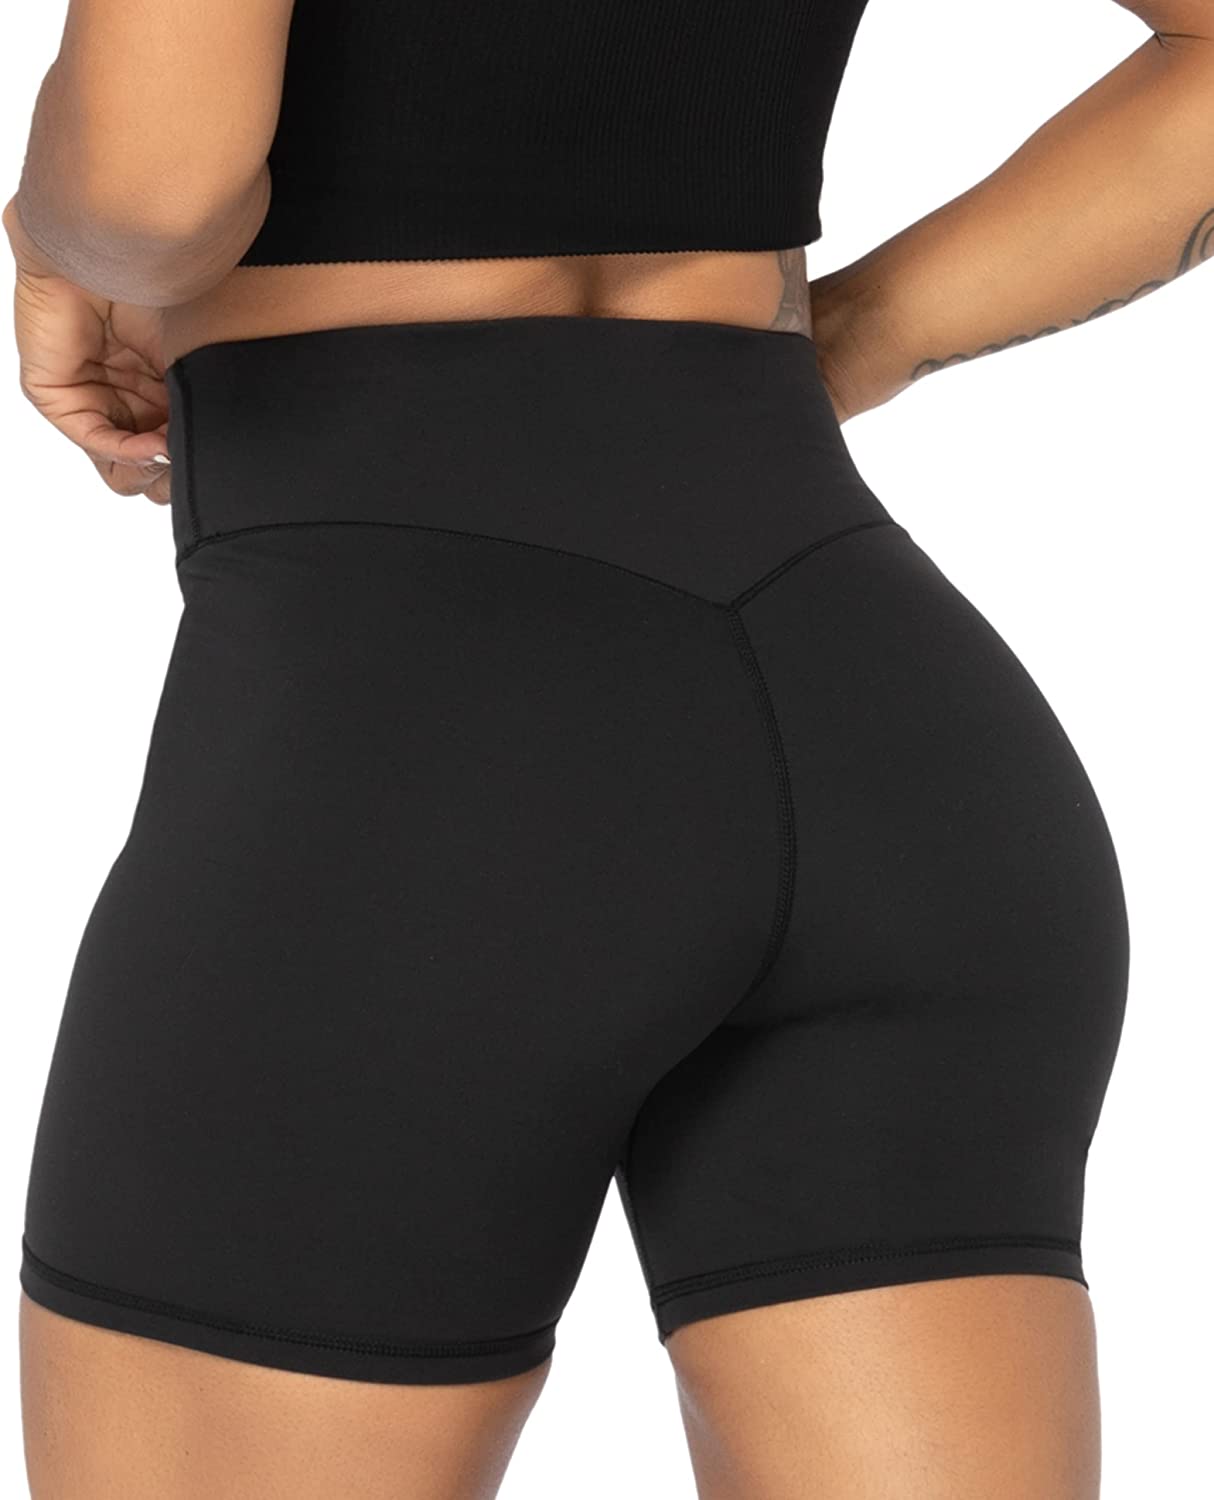 OVESPORT Workout Shorts for Women Scrunch Butt Lifting High Waisted Yoga  Gym Seamless Booty Biker Shorts